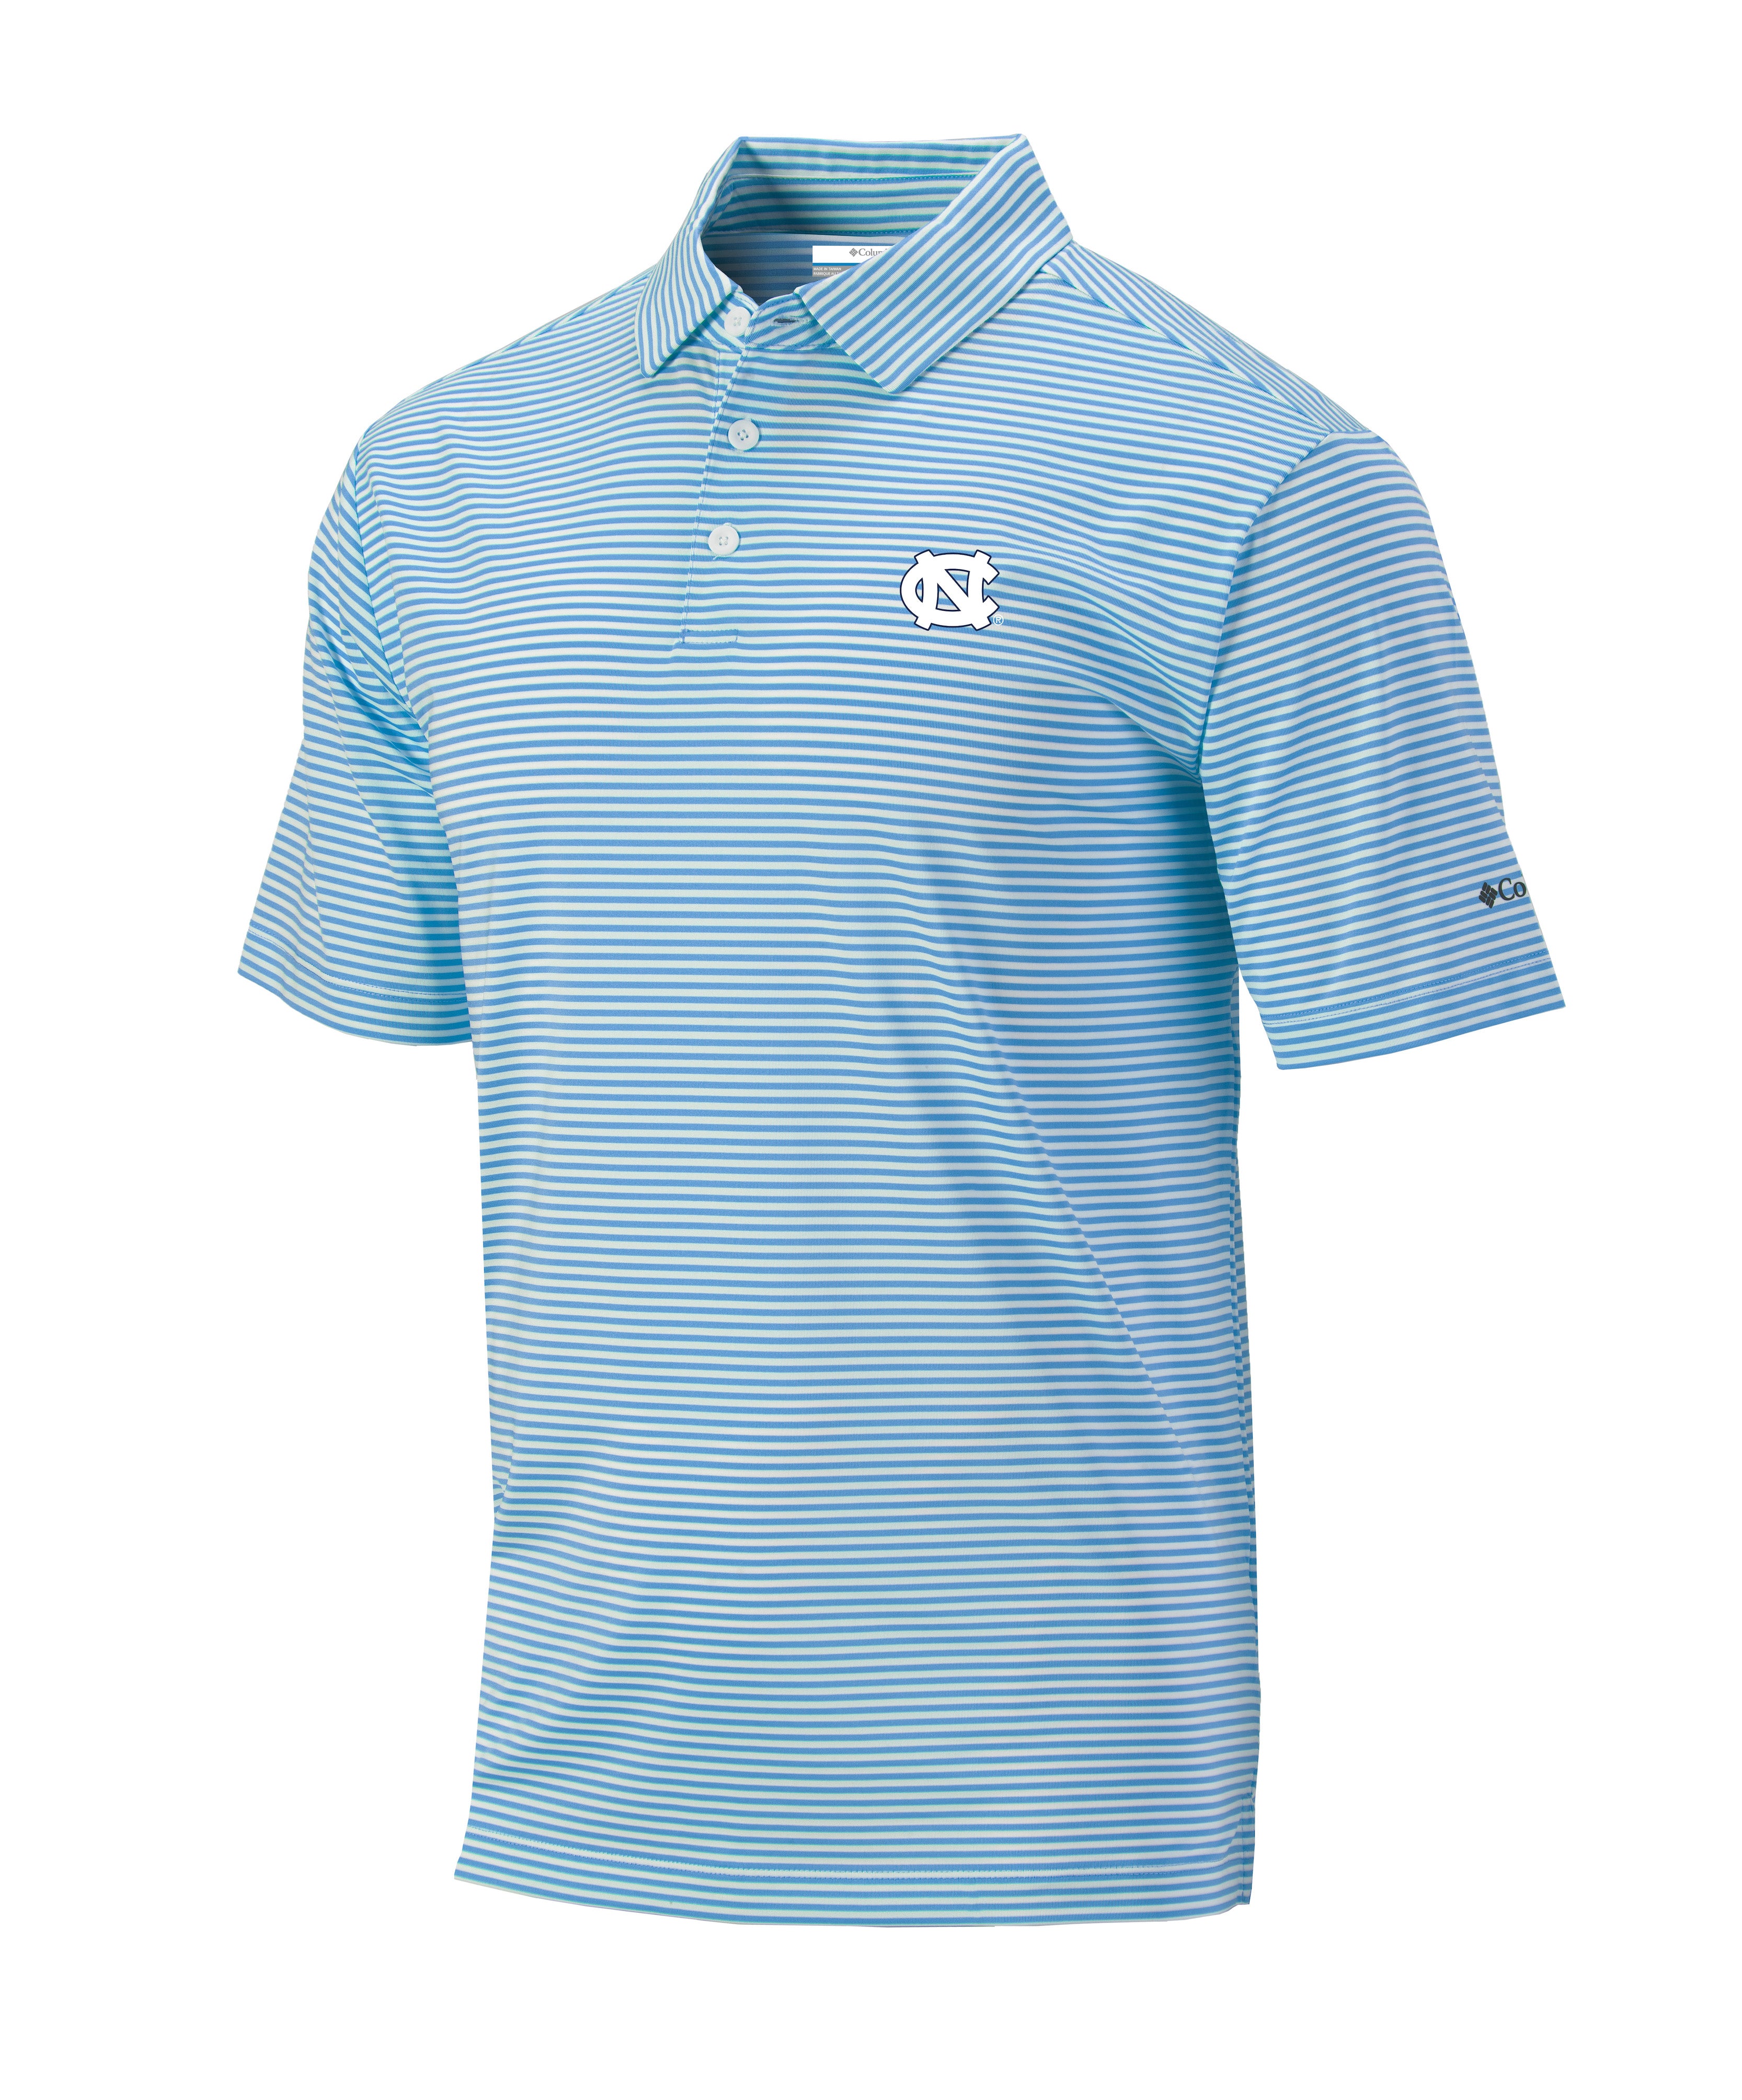 Columbia Golf Omni-Wick Club Invite UNC Polo Shirt